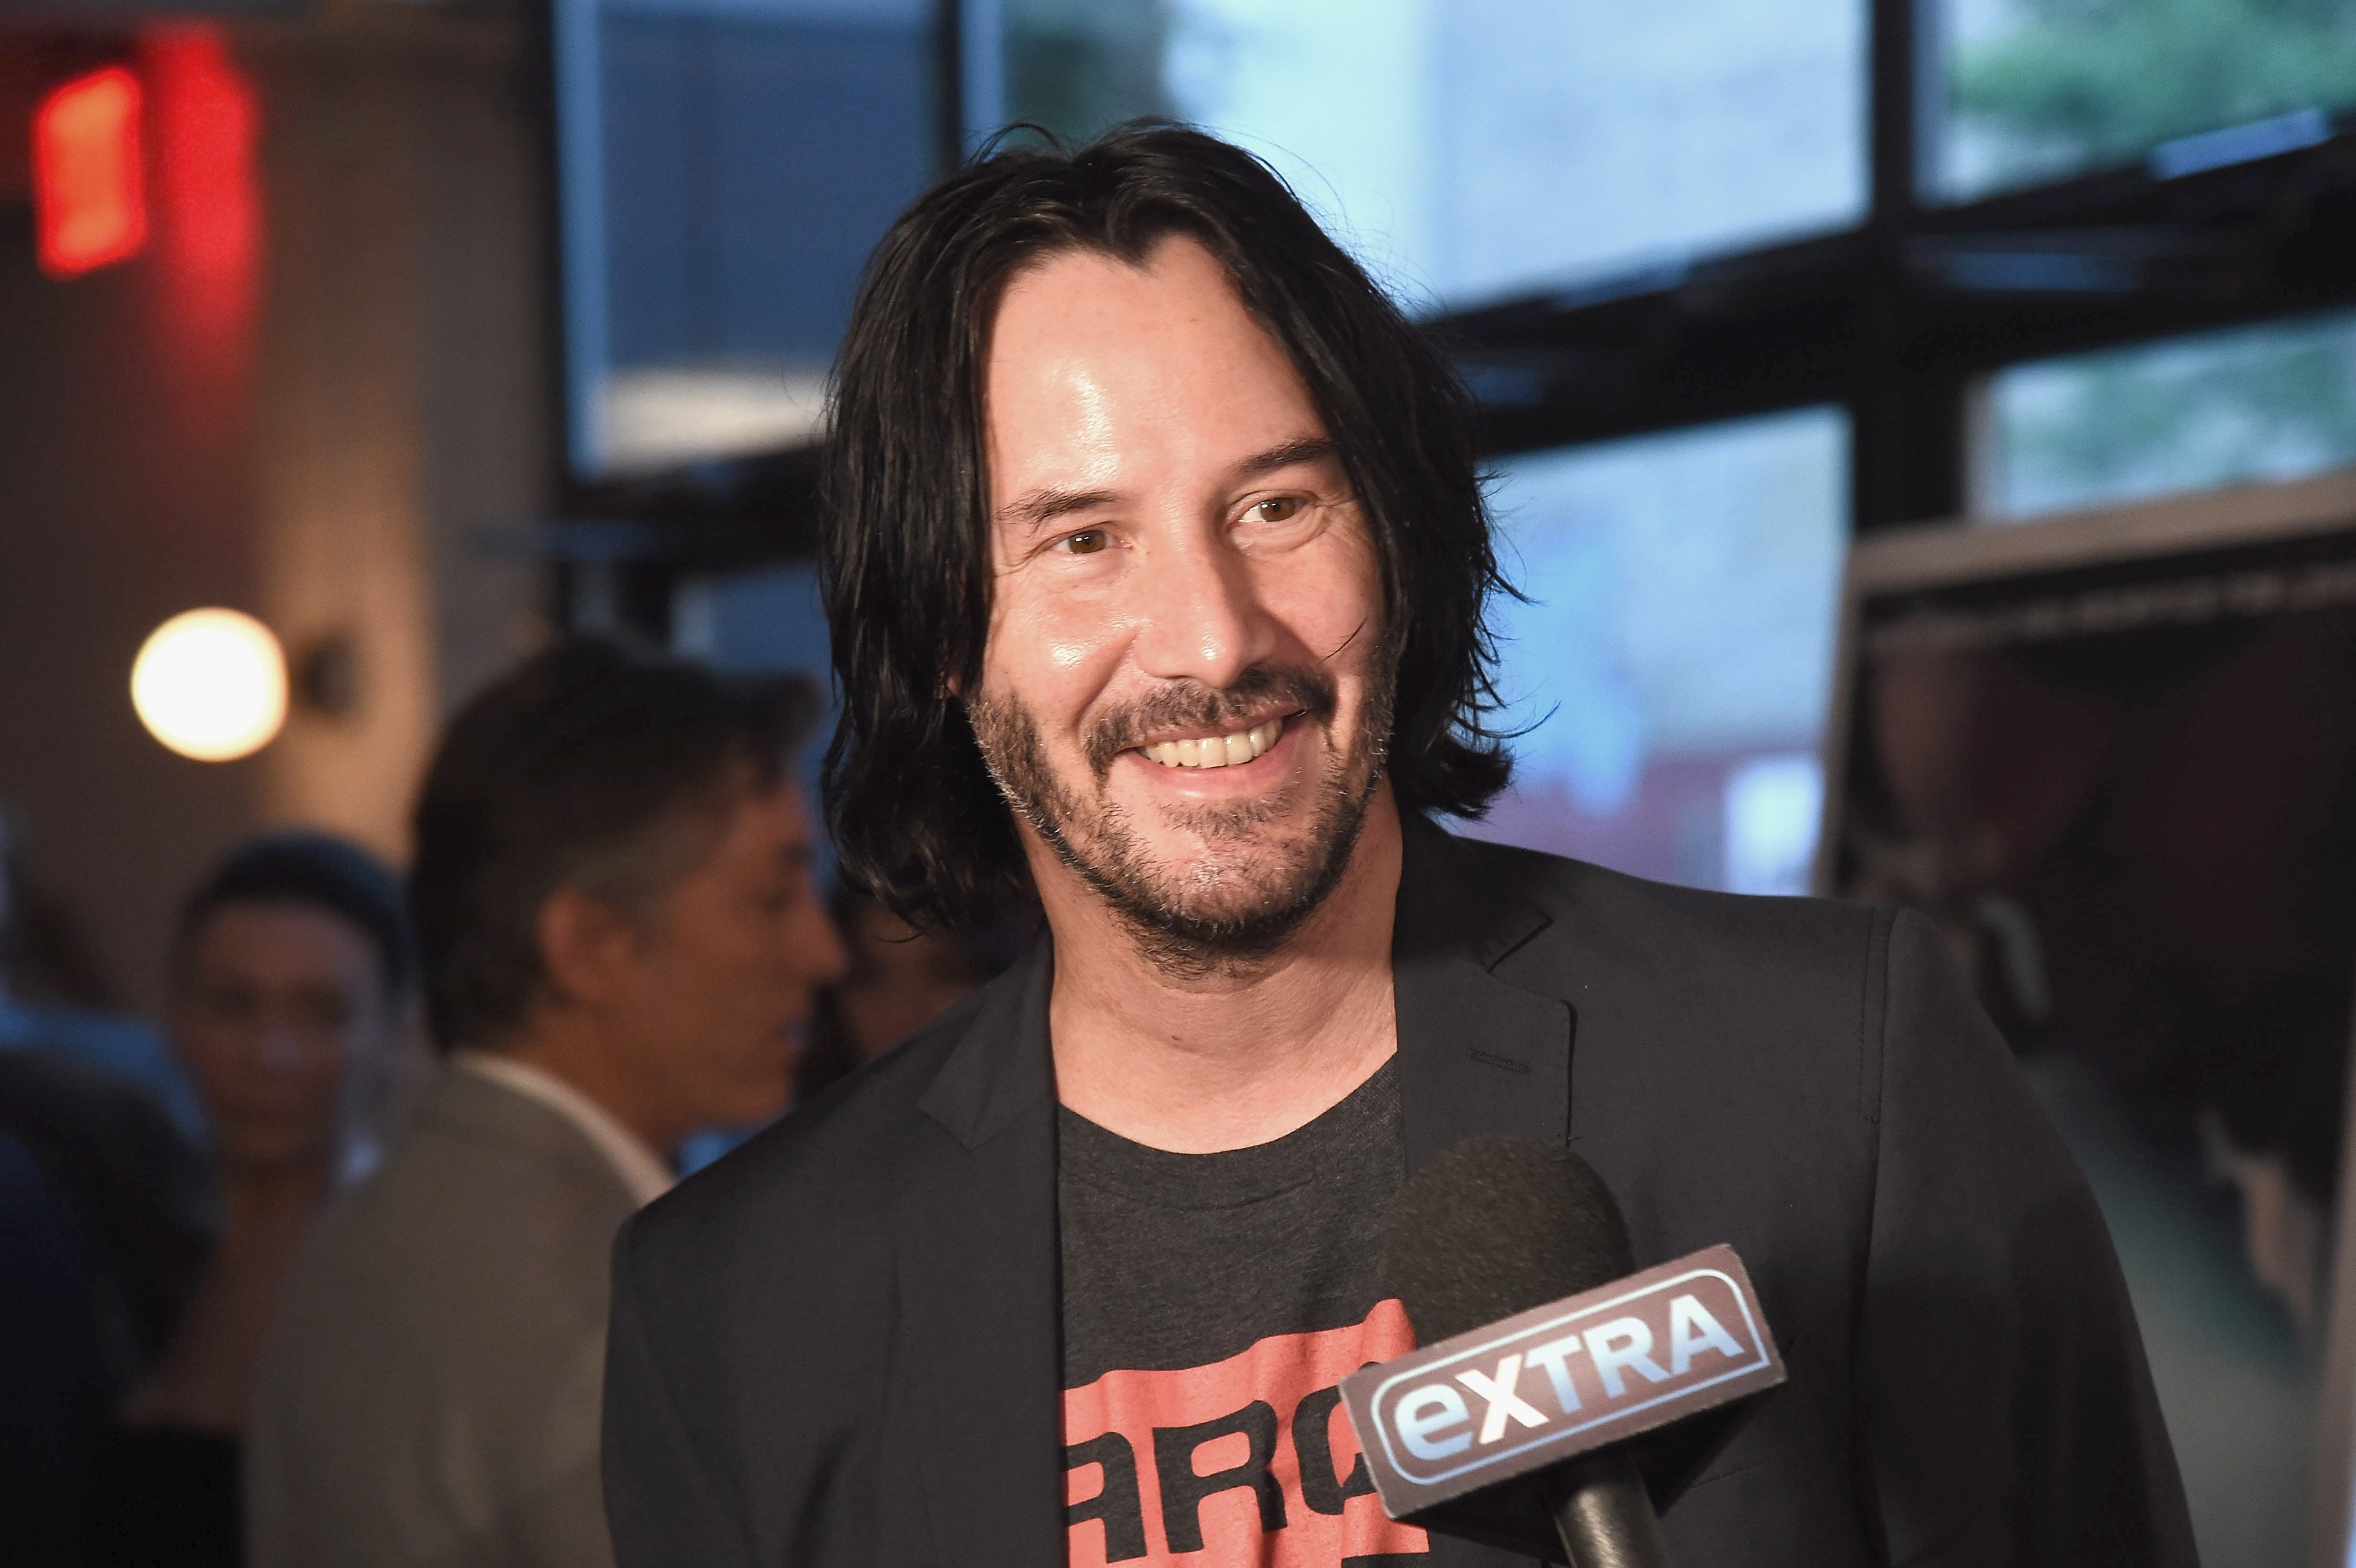 Keanu Reeves attending a film premiere